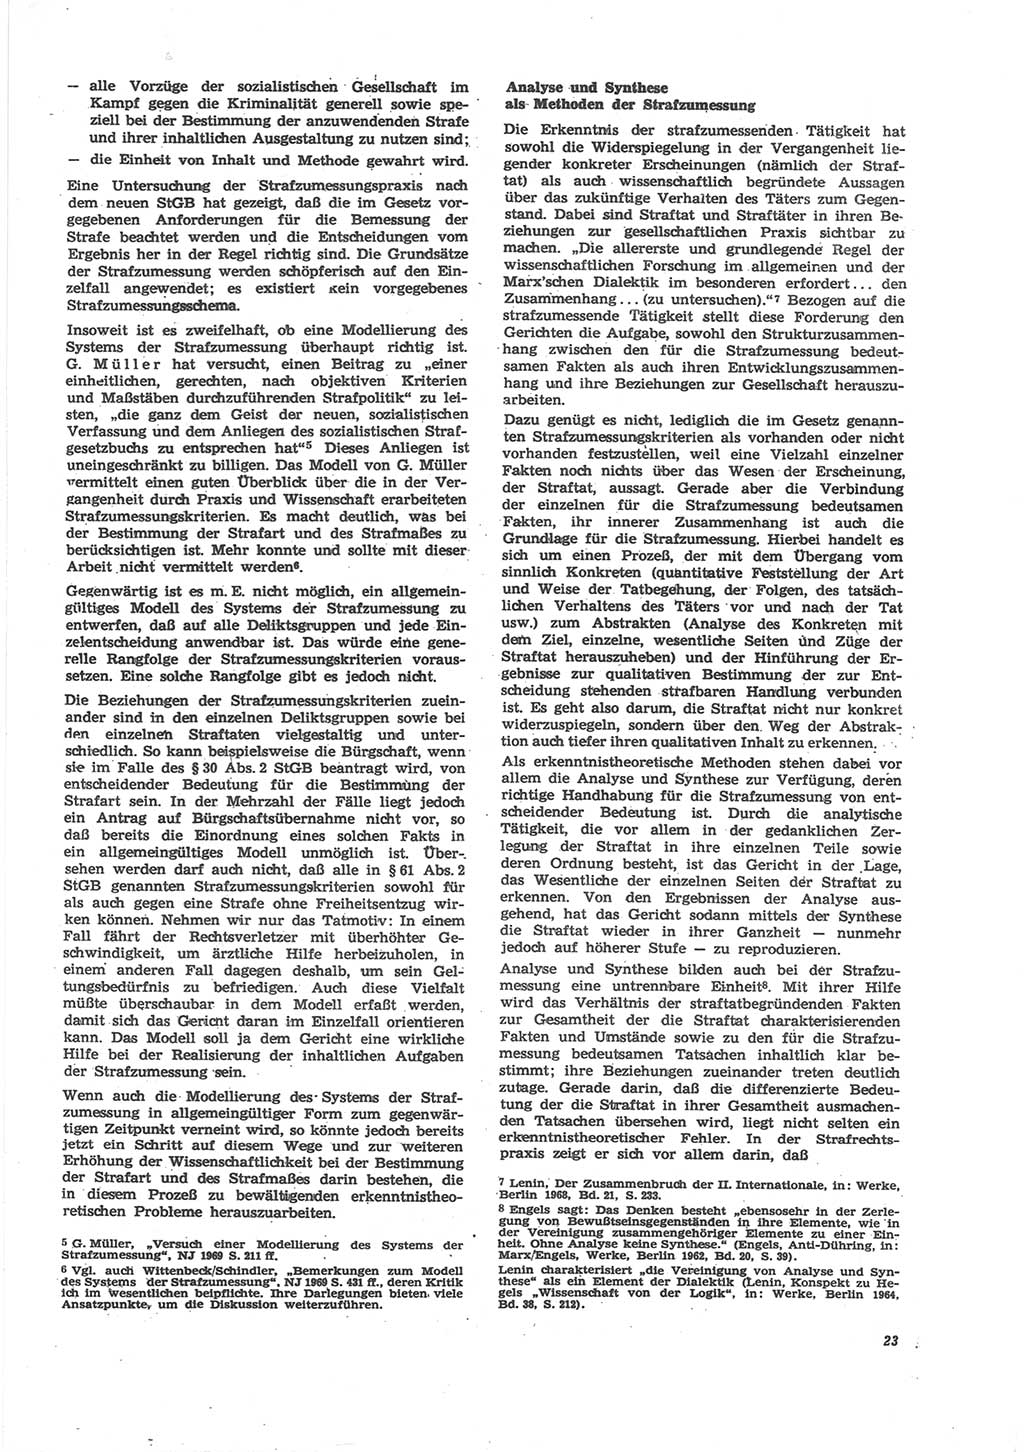 Neue Justiz (NJ), Zeitschrift für Recht und Rechtswissenschaft [Deutsche Demokratische Republik (DDR)], 24. Jahrgang 1970, Seite 23 (NJ DDR 1970, S. 23)